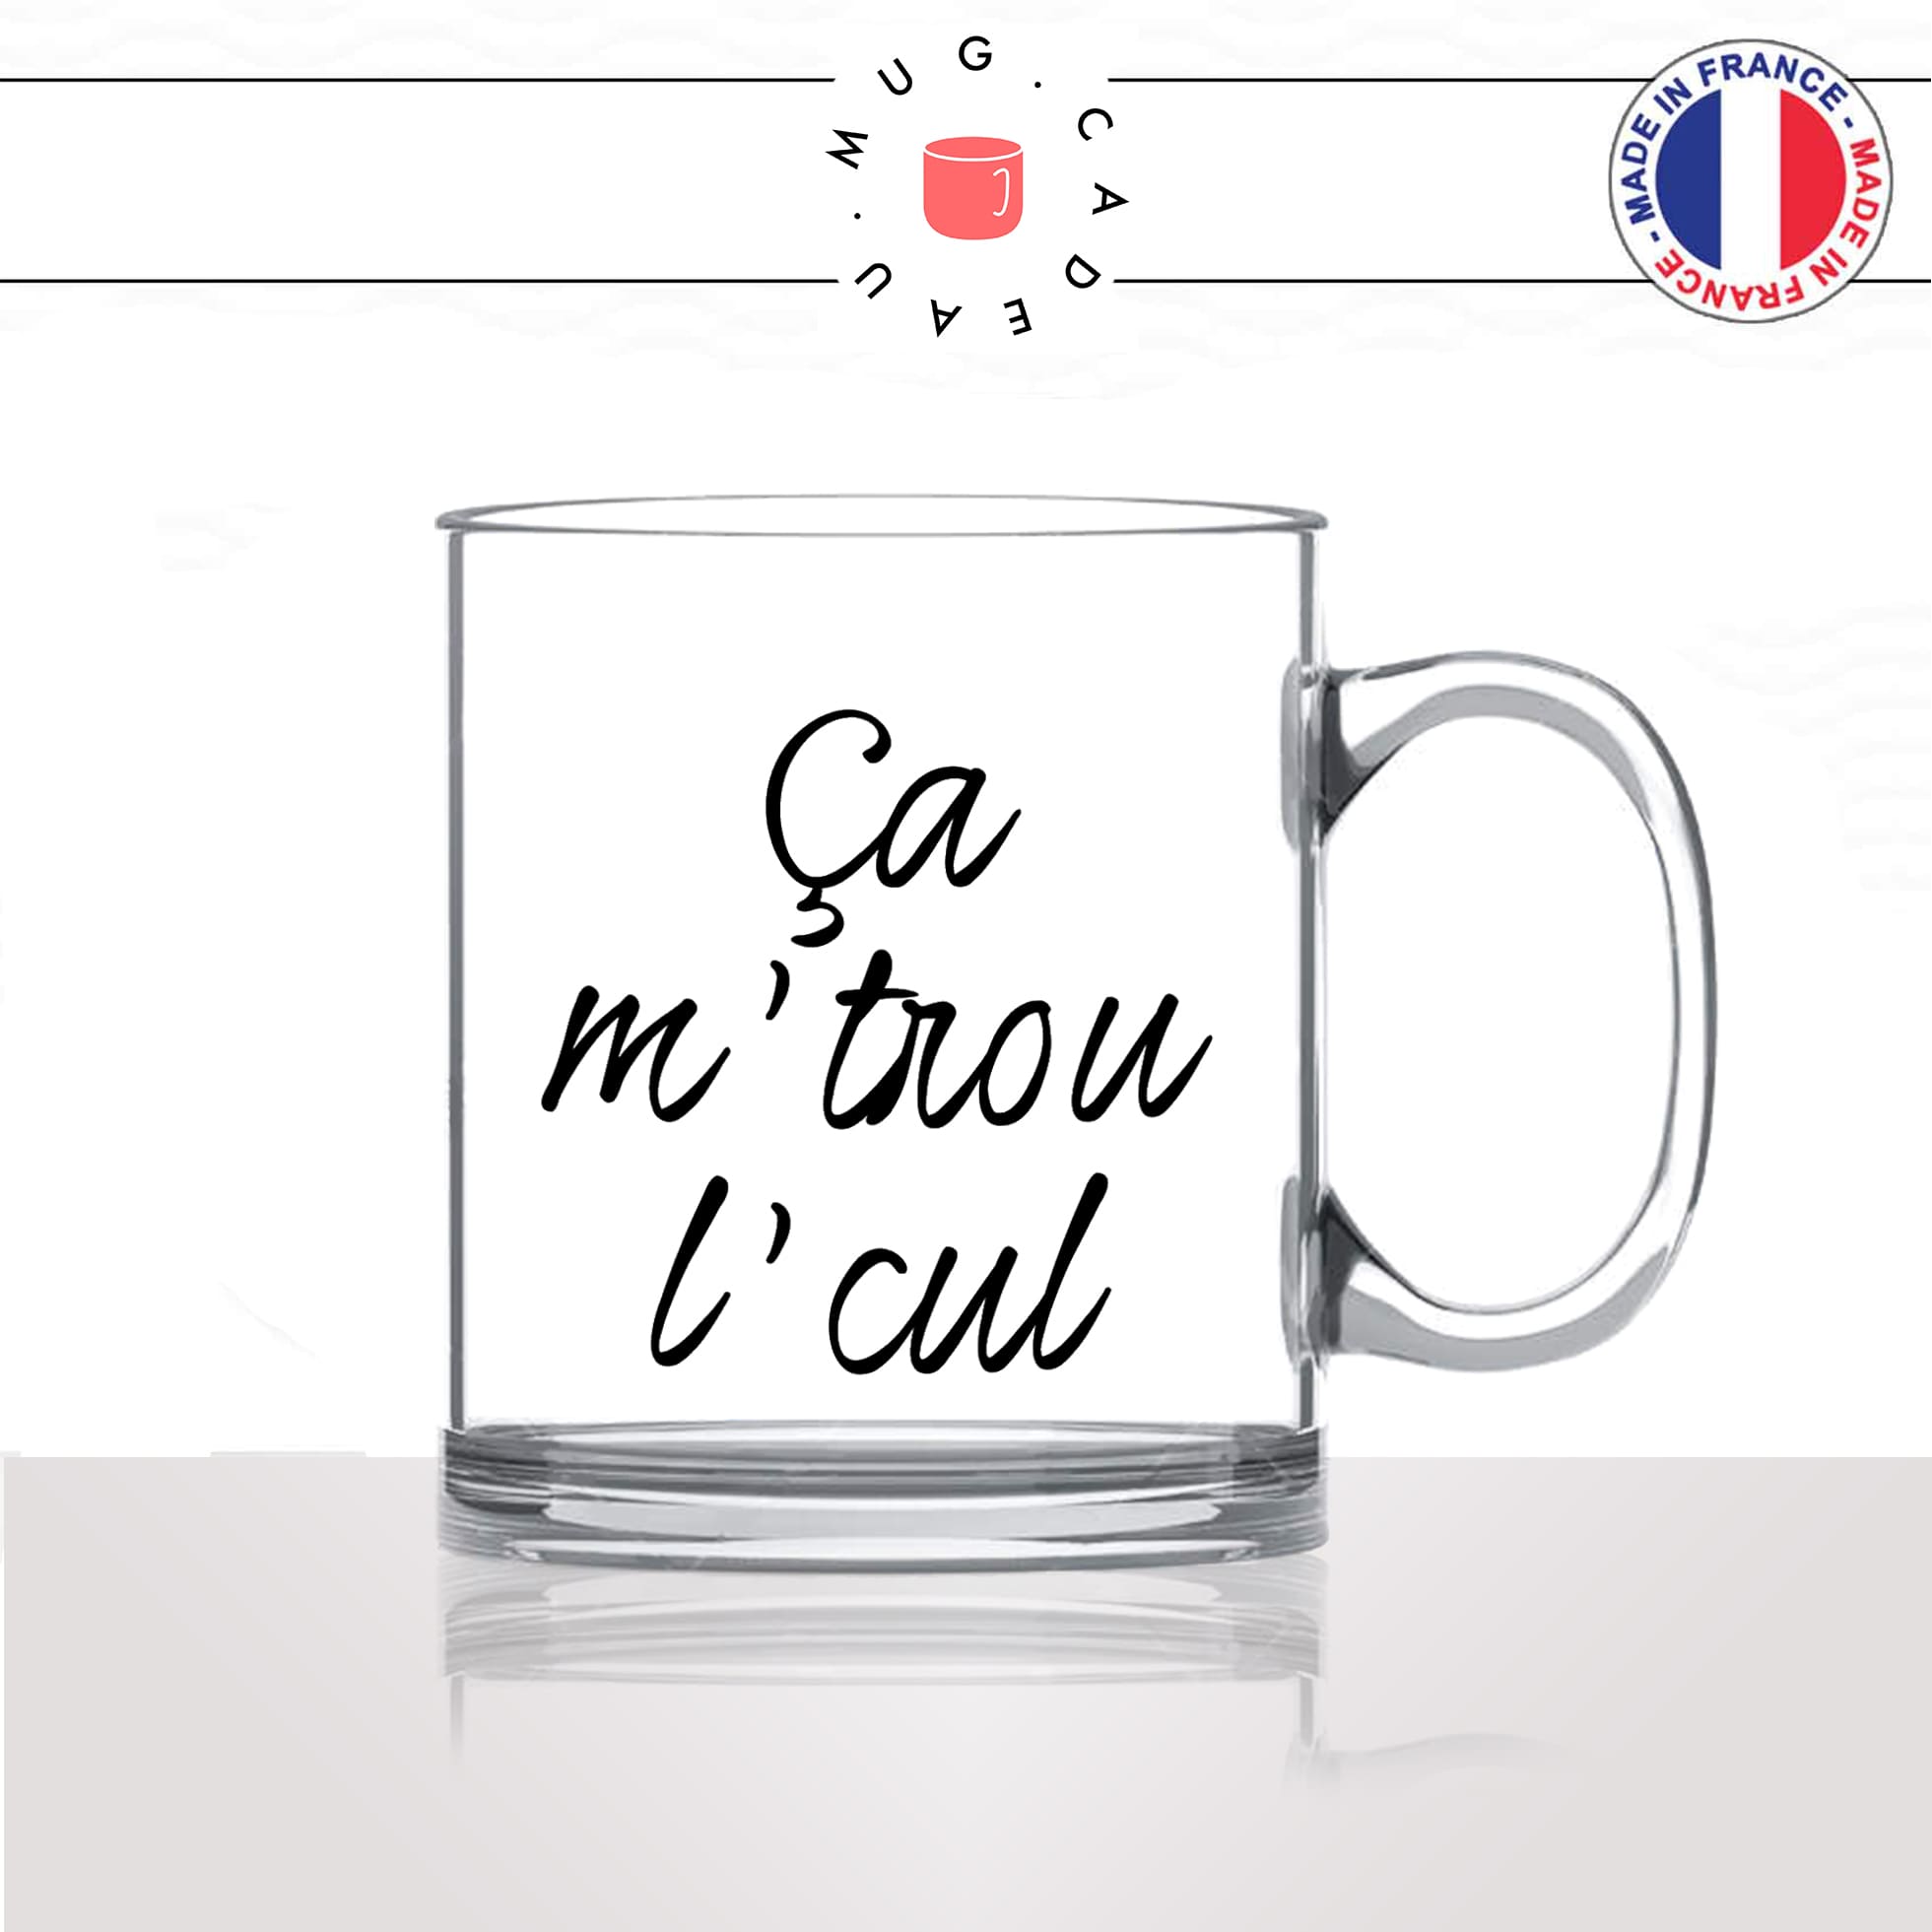 mug-tasse-en-verre-transparent-glass-ca-me-trou-le-cul-expression-francaise-homme-femme-humour-fun-cool-idée-cadeau-original-personnalisé2